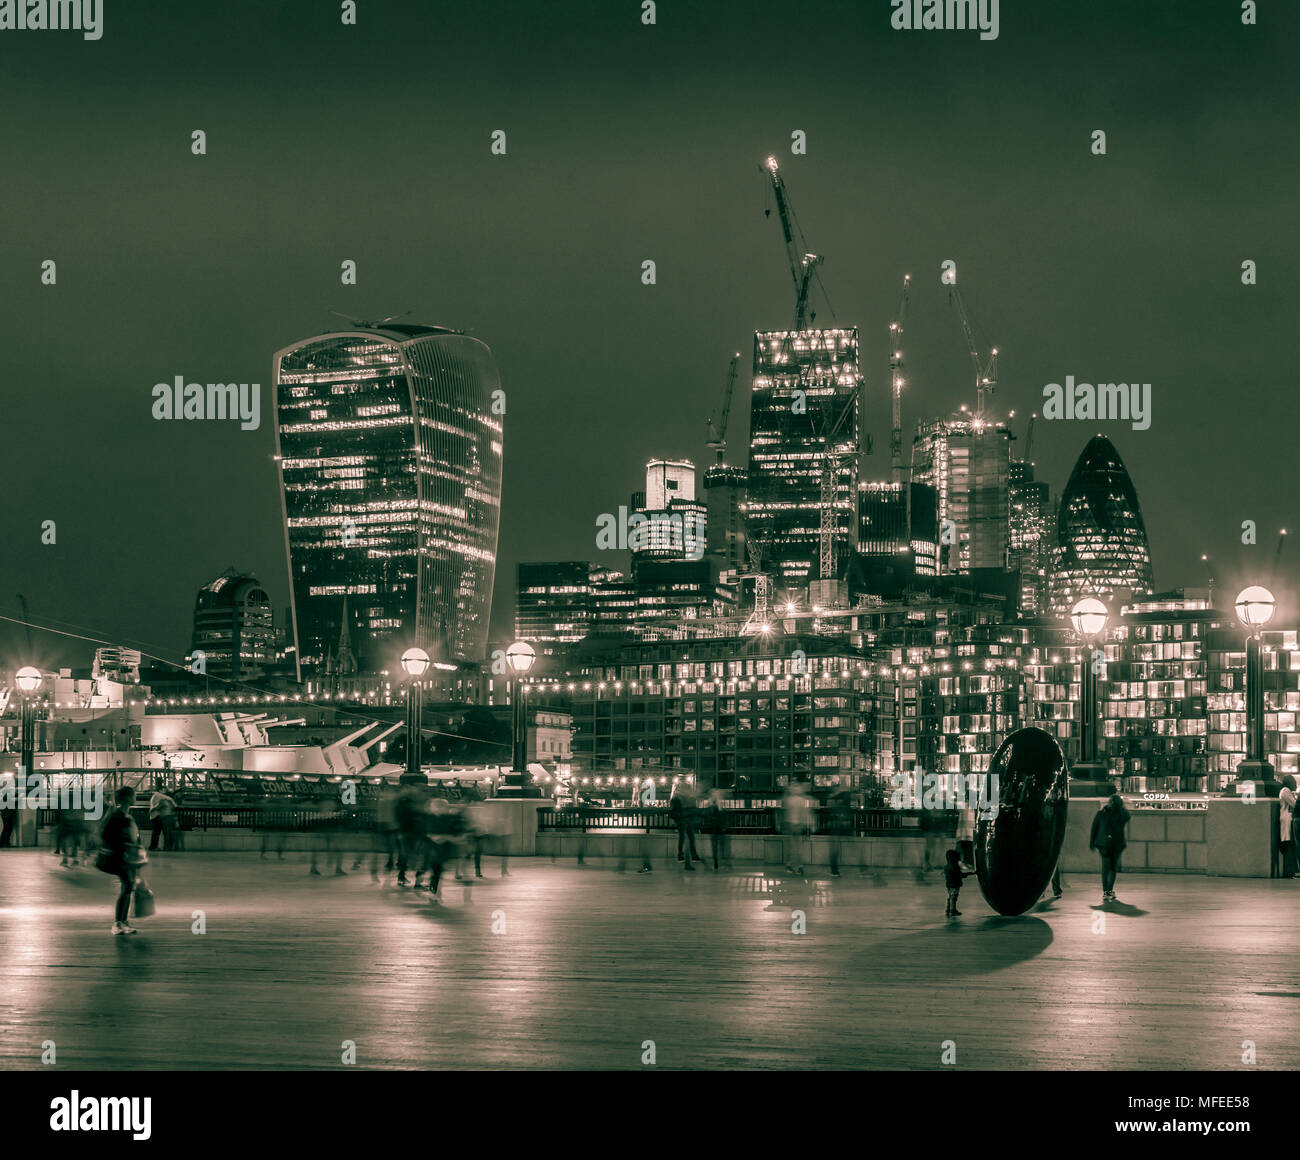 Bankenviertel Skyline bei Nacht 2017, Split getonten Bild, City of London, England, Großbritannien Stockfoto